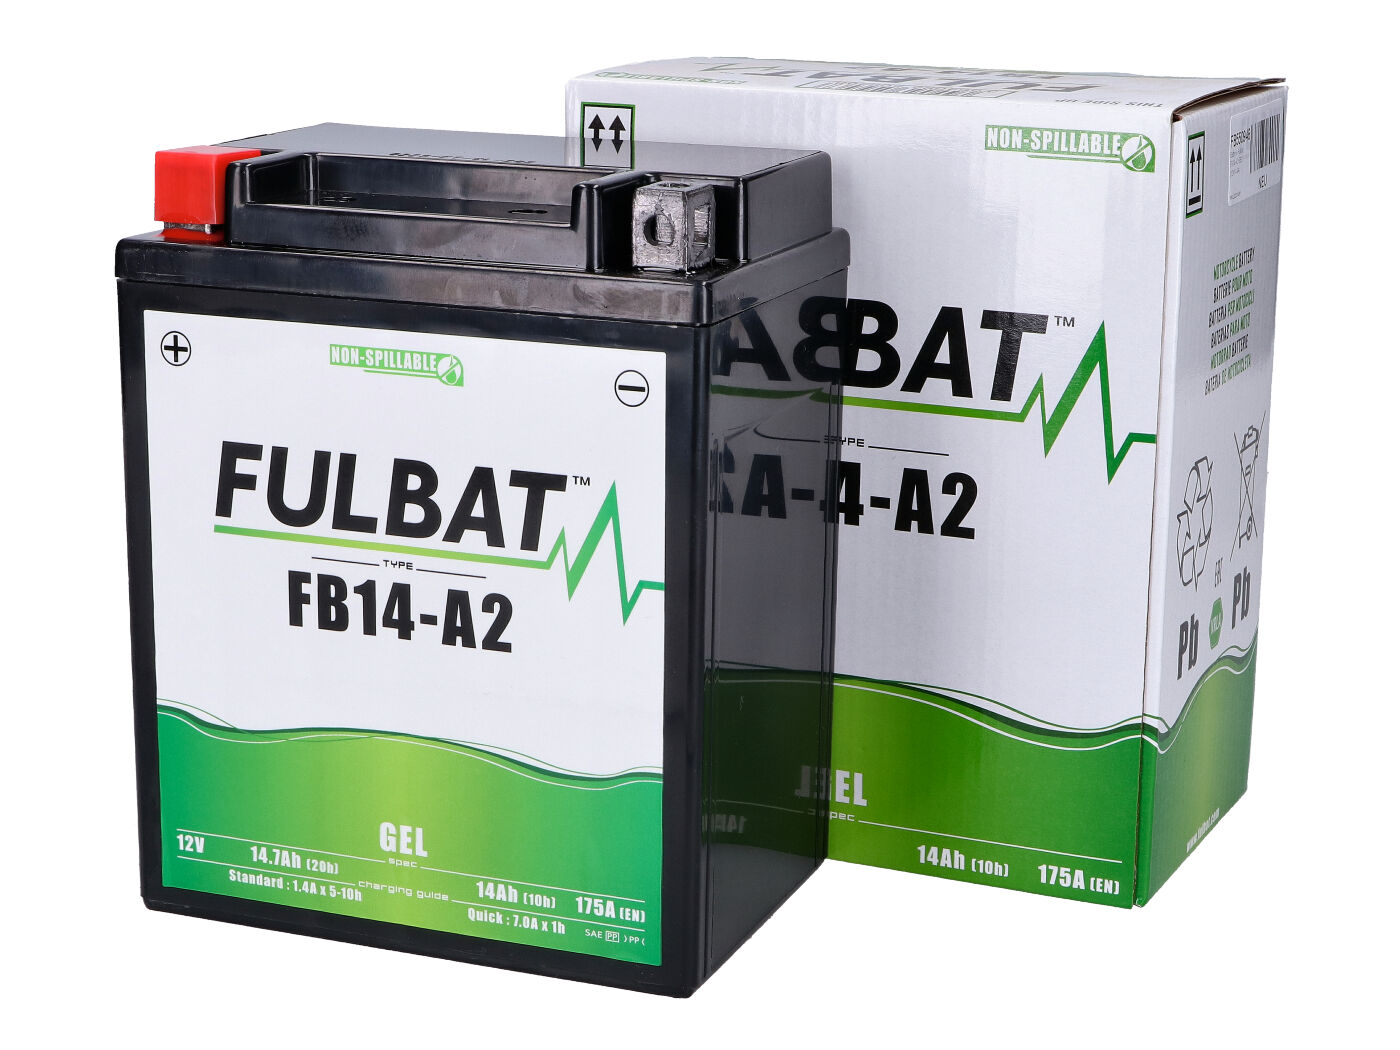 Fulbat FB14-A2 GEL Batterie